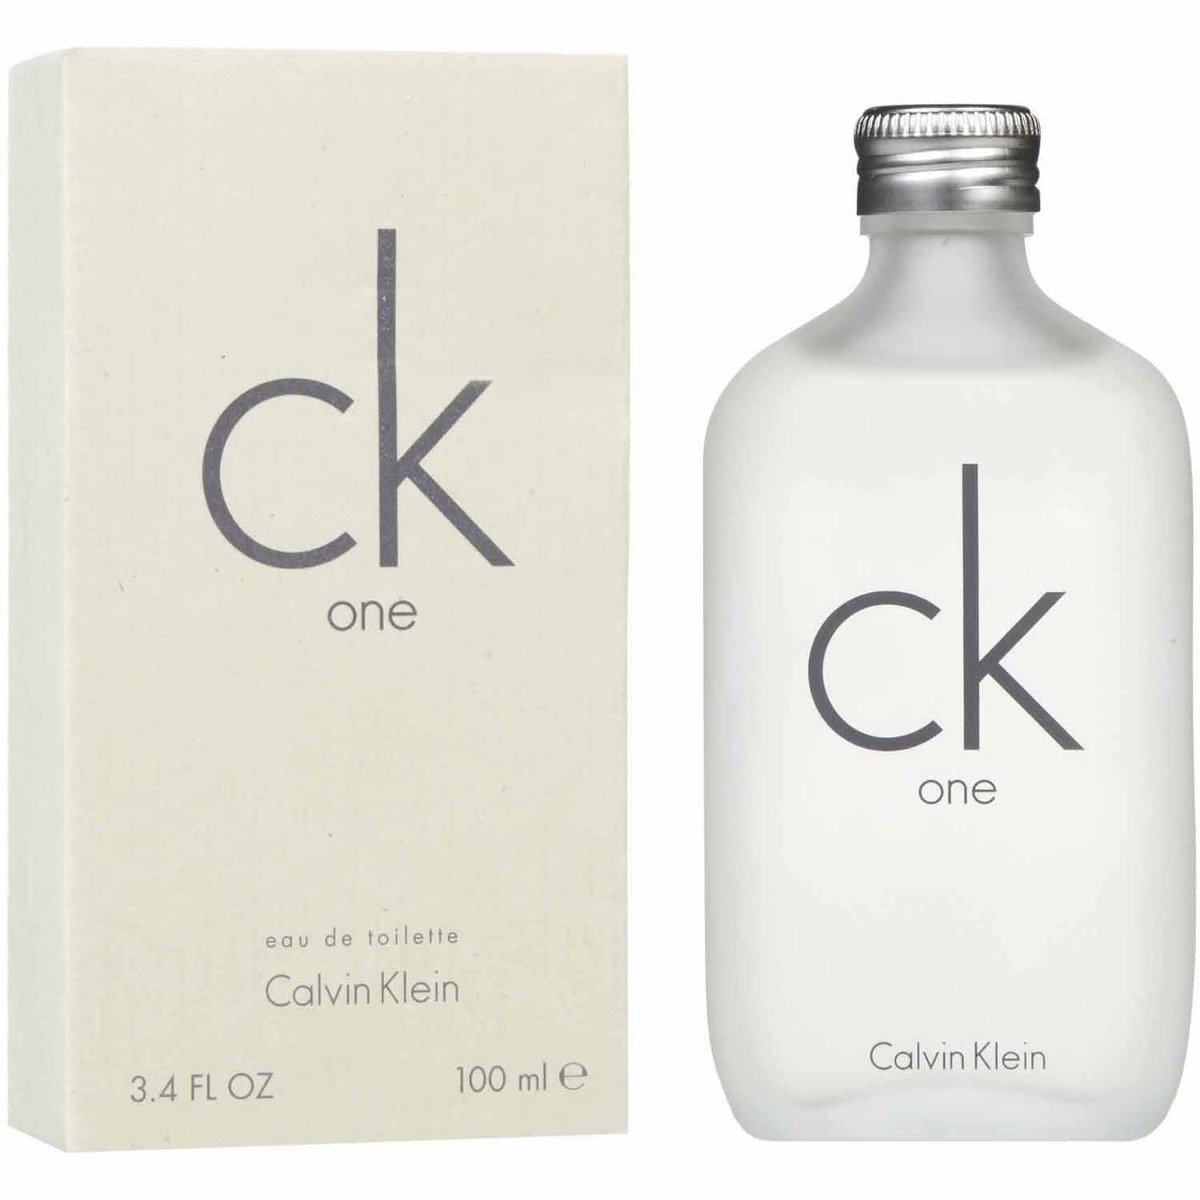 Perfume Ck One By Calvin Klein Unisex 100ml - $ 615.00 en Mercado Libre